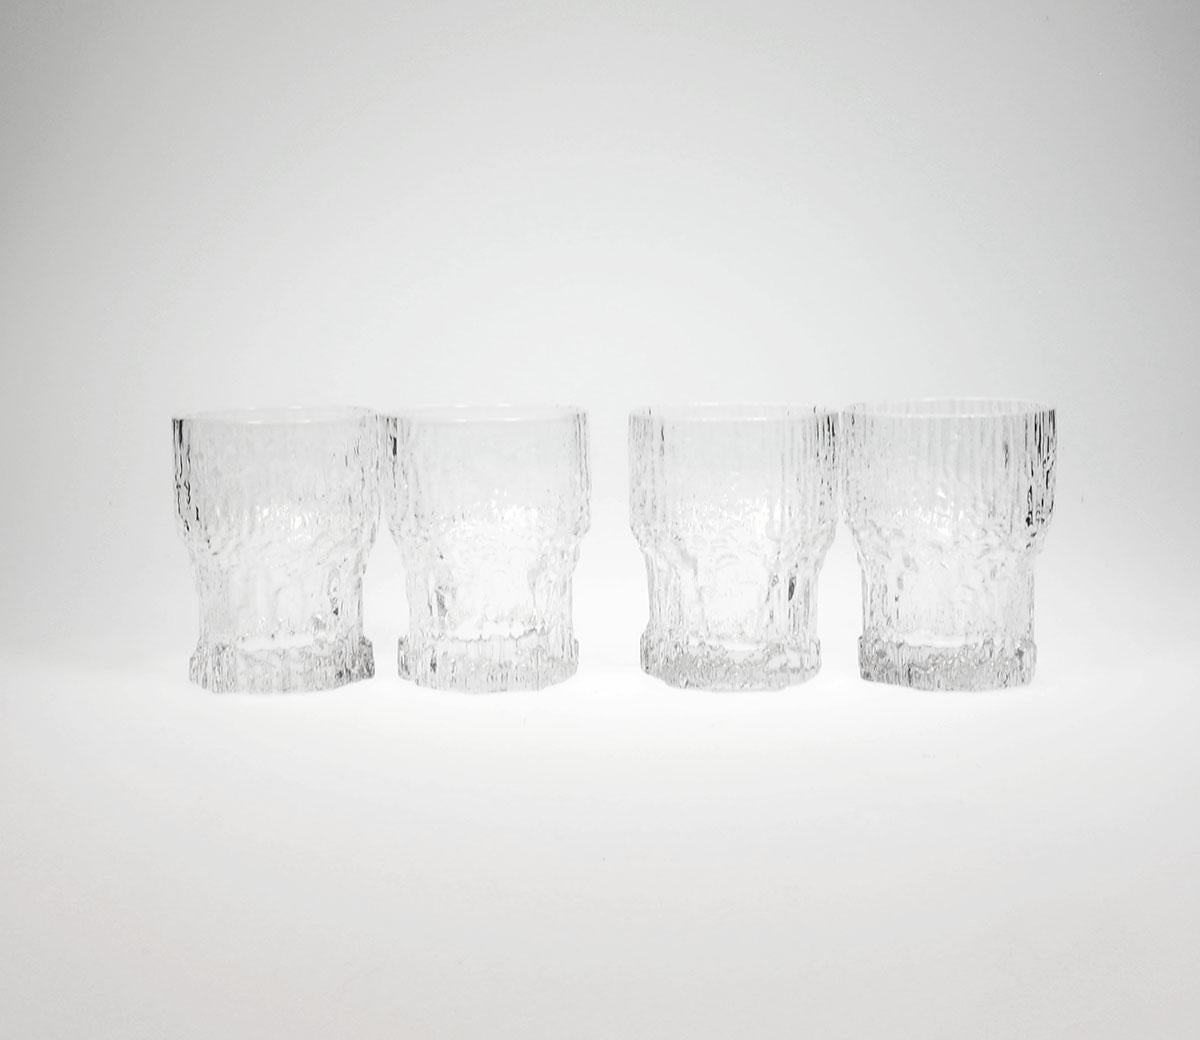 Verres à shot en verre vintage conçus par Tapio Wirkkala pour Iittala.

Modèle Aslak produit dans les années 1970-80.

Le verre présente un motif fantaisiste inspiré de la nature.

Idéal comme verre à boisson ou à shot.

En très bon état.

Hauteur